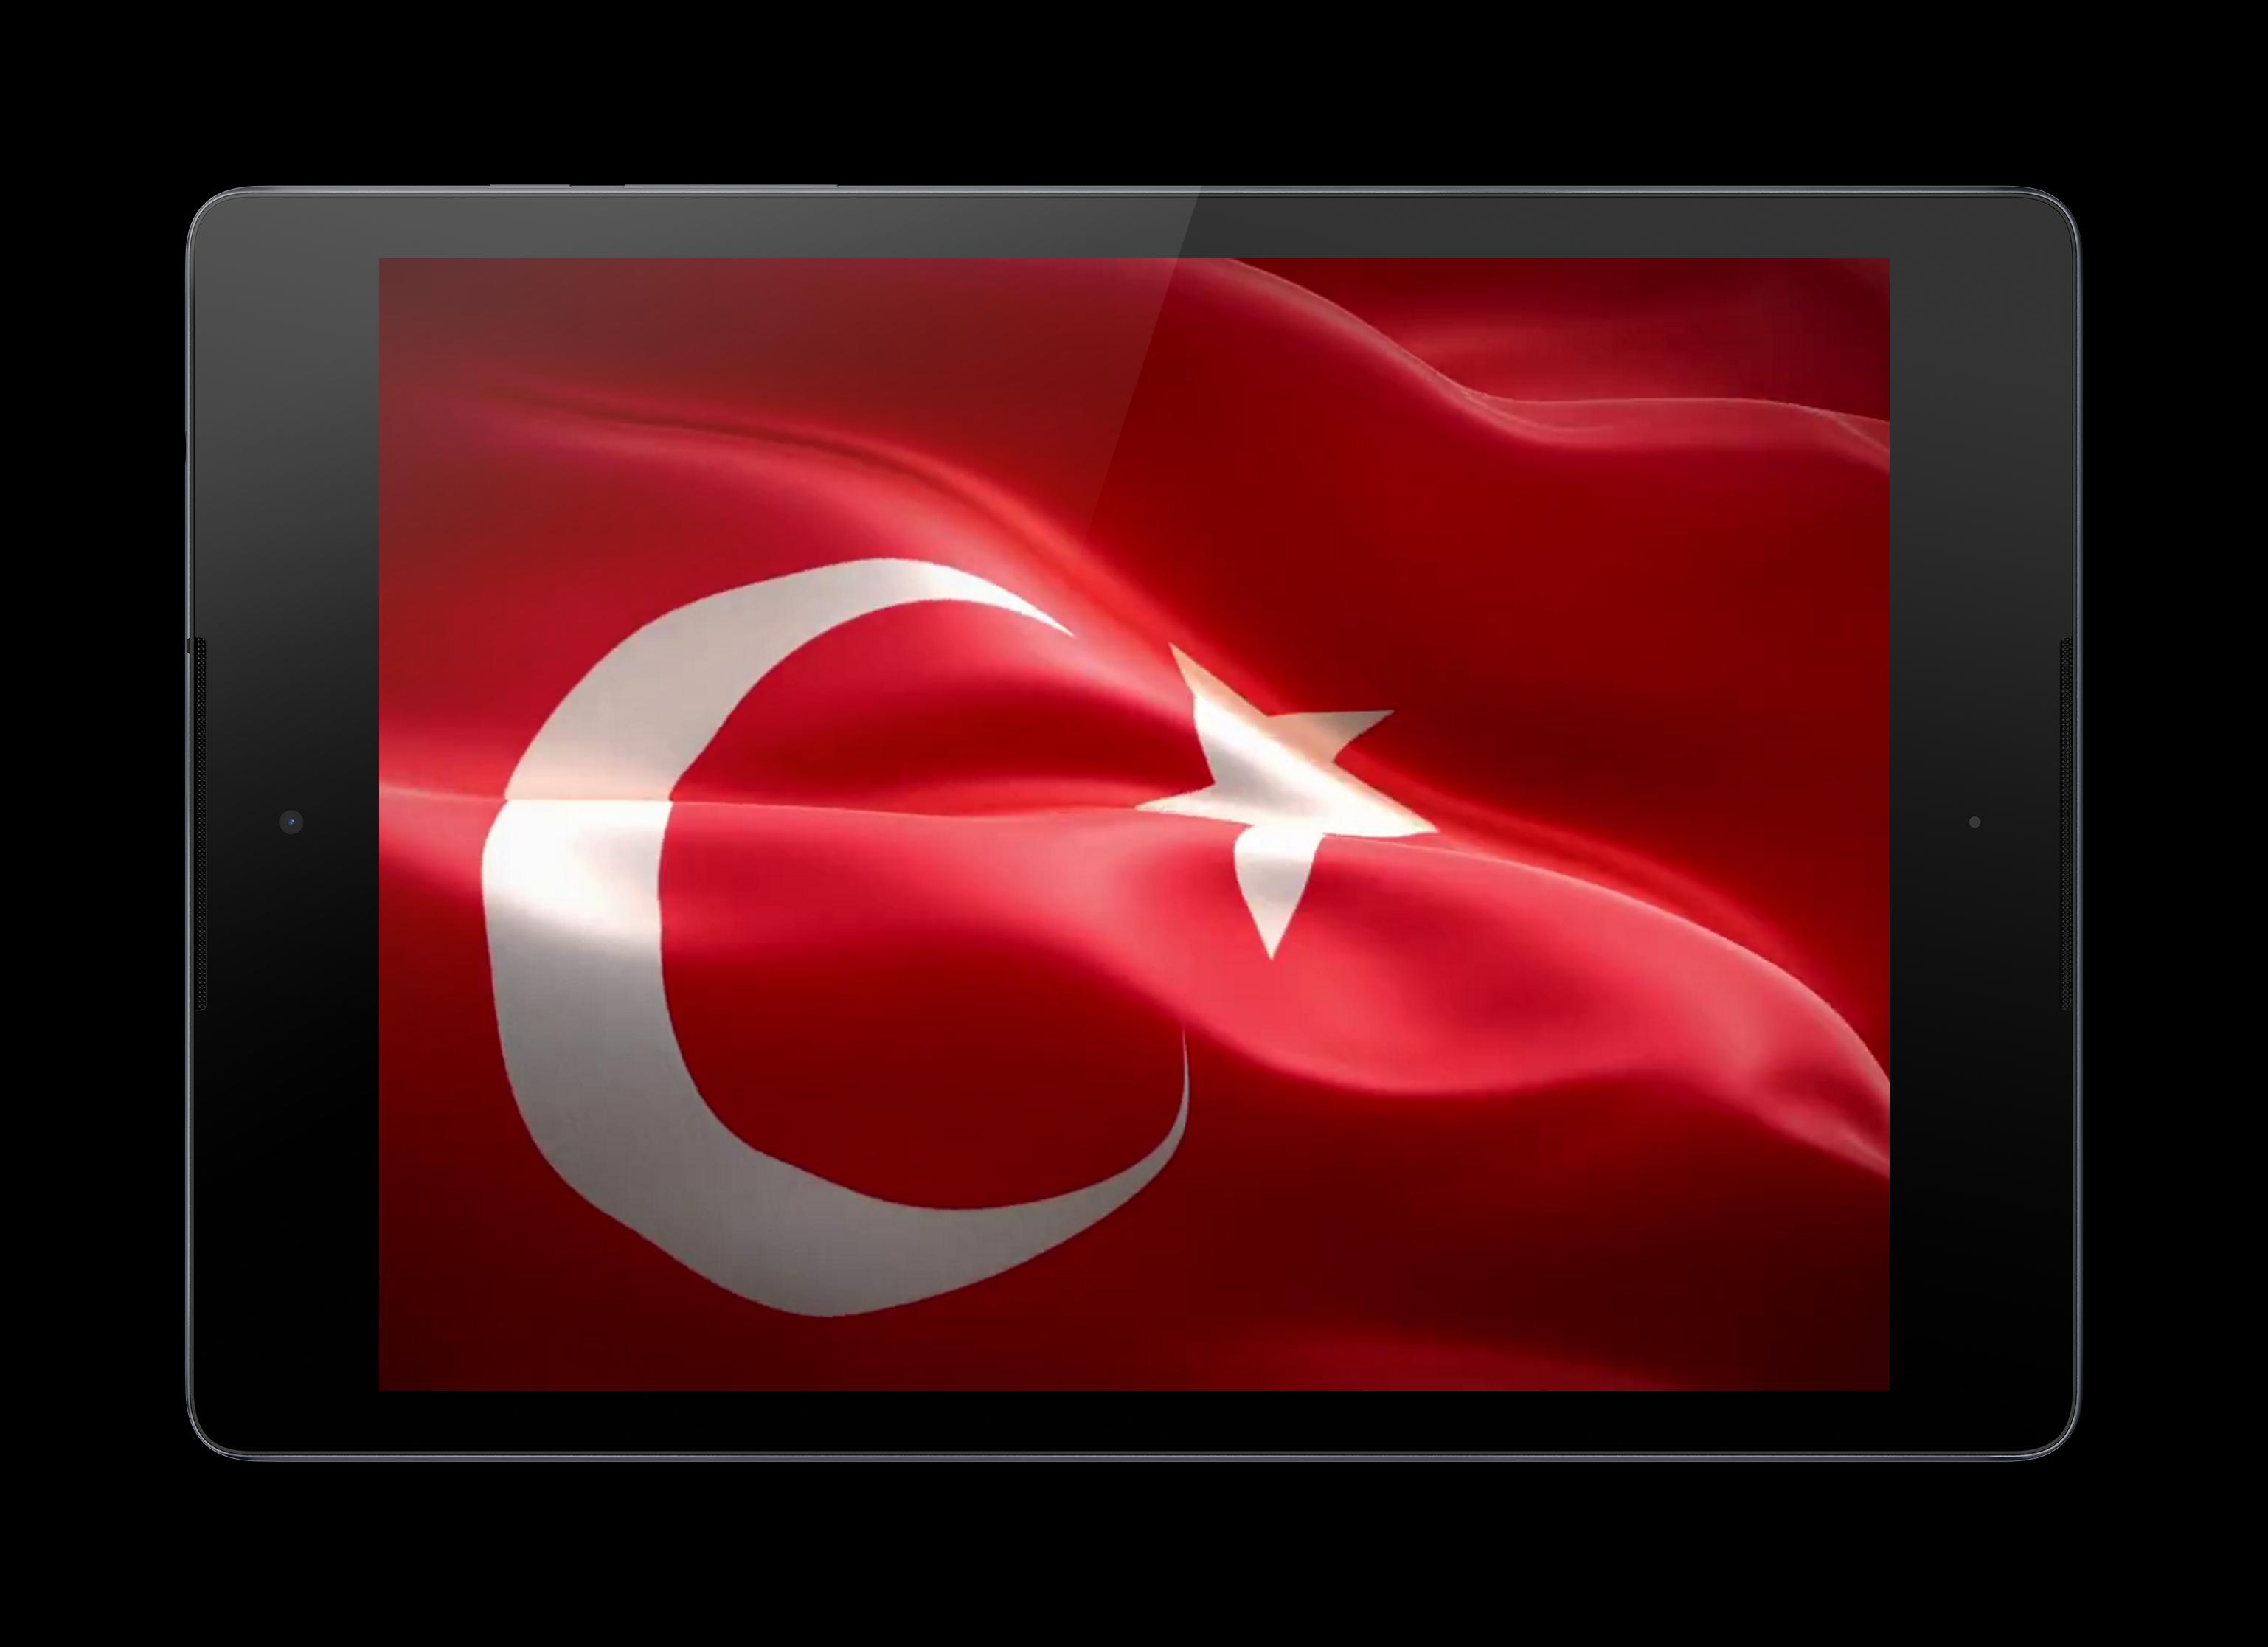 Turkey video. Флаг Турции видео. Турция флаг живое. Турция видео для презентации. Турция видео.